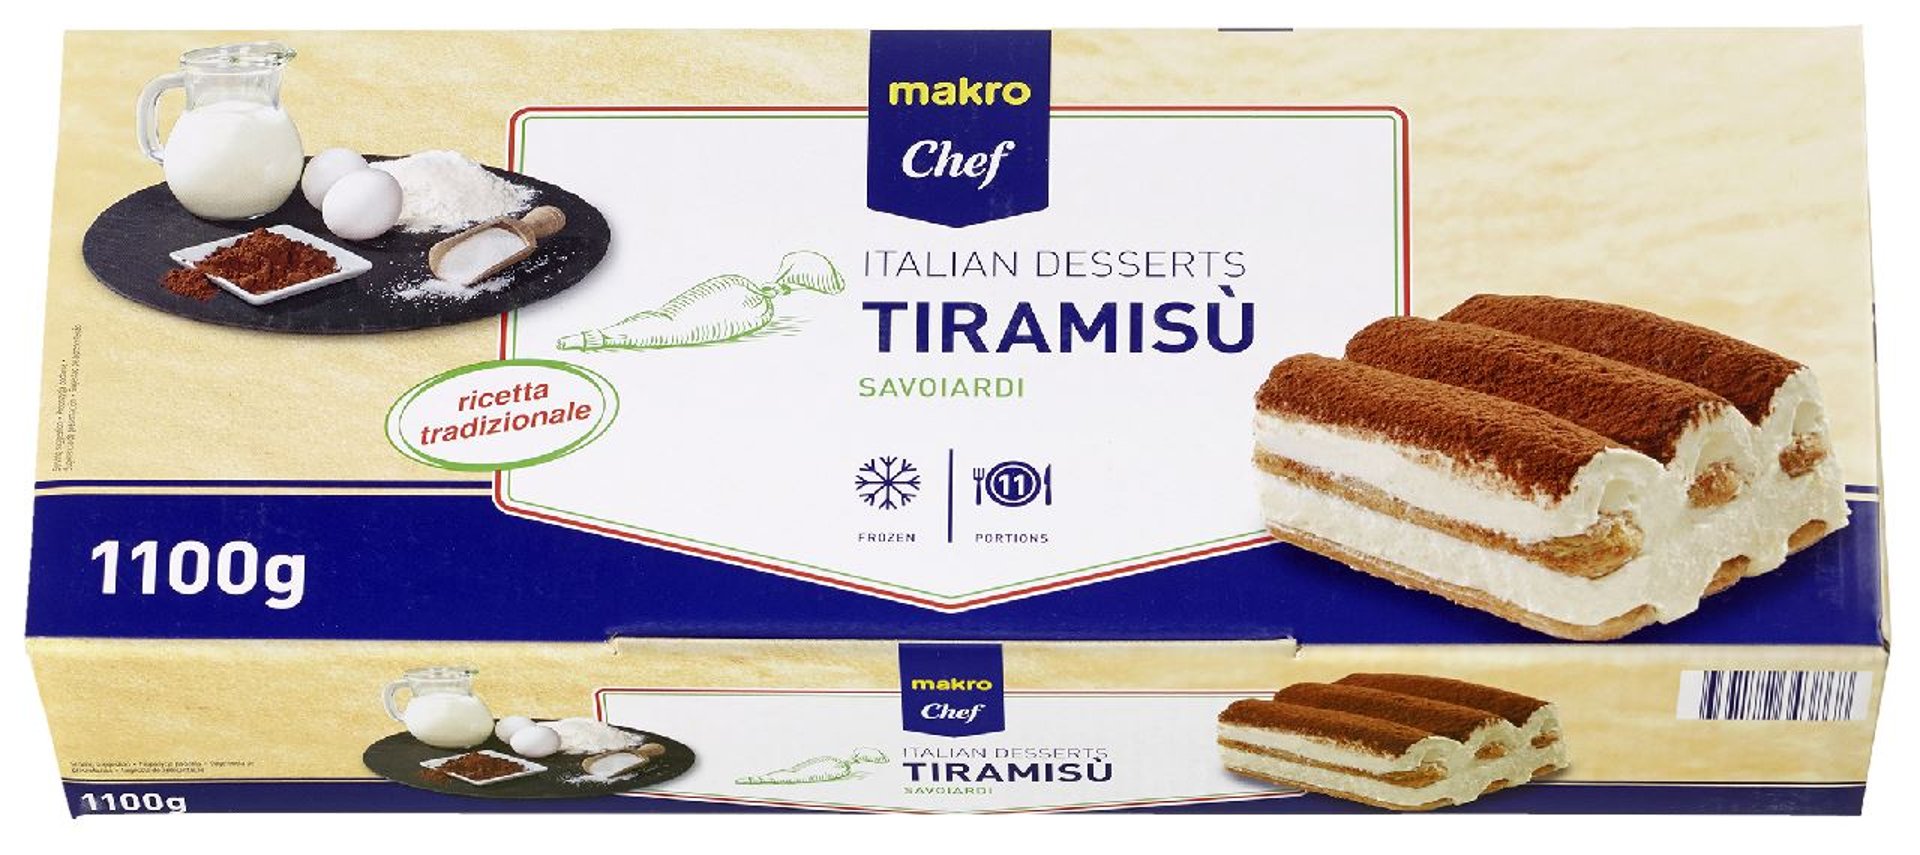 METRO Chef - Tiramisu Savoiardi - 6 x 1,1 kg Boxen